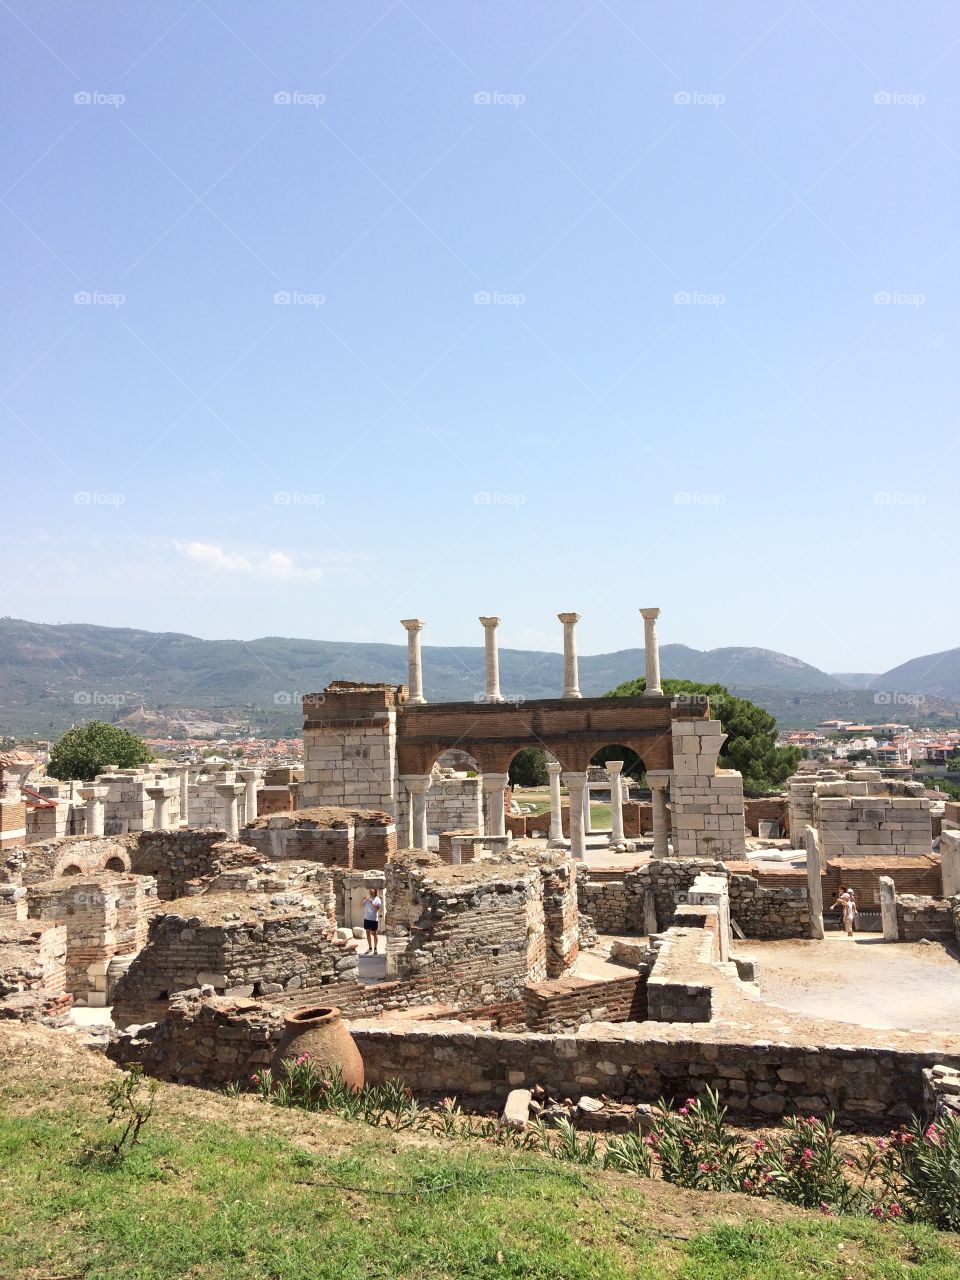 Efes, Turkey